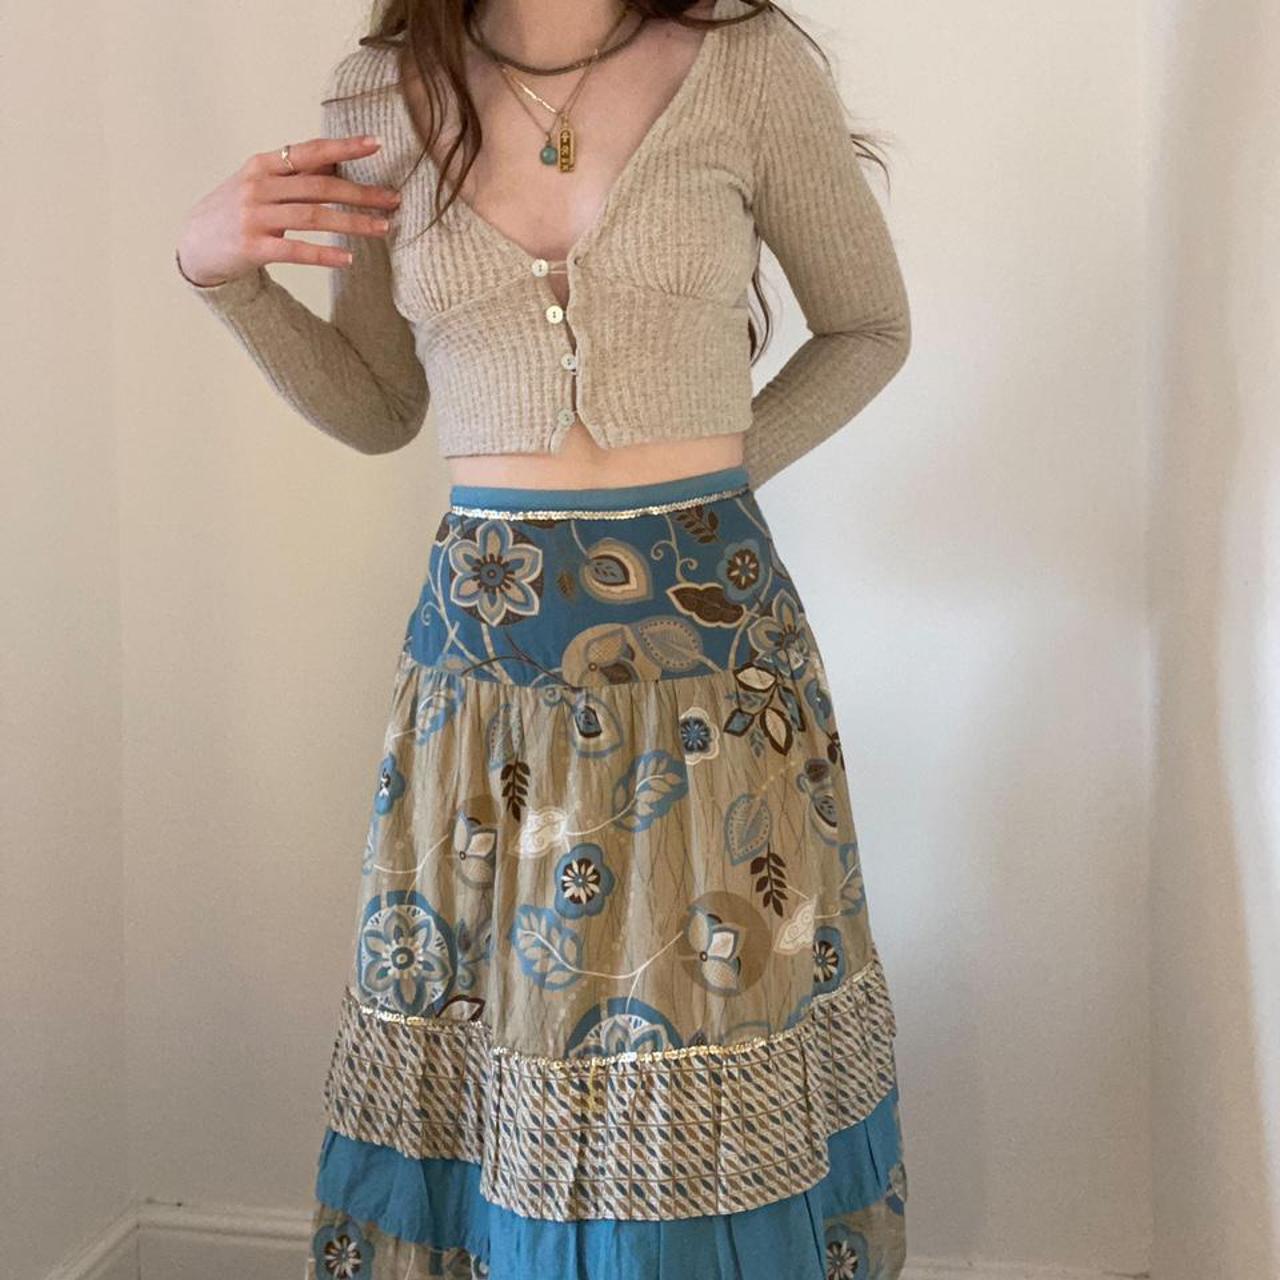 Stunning vintage George fairycore midi skirt, with... - Depop